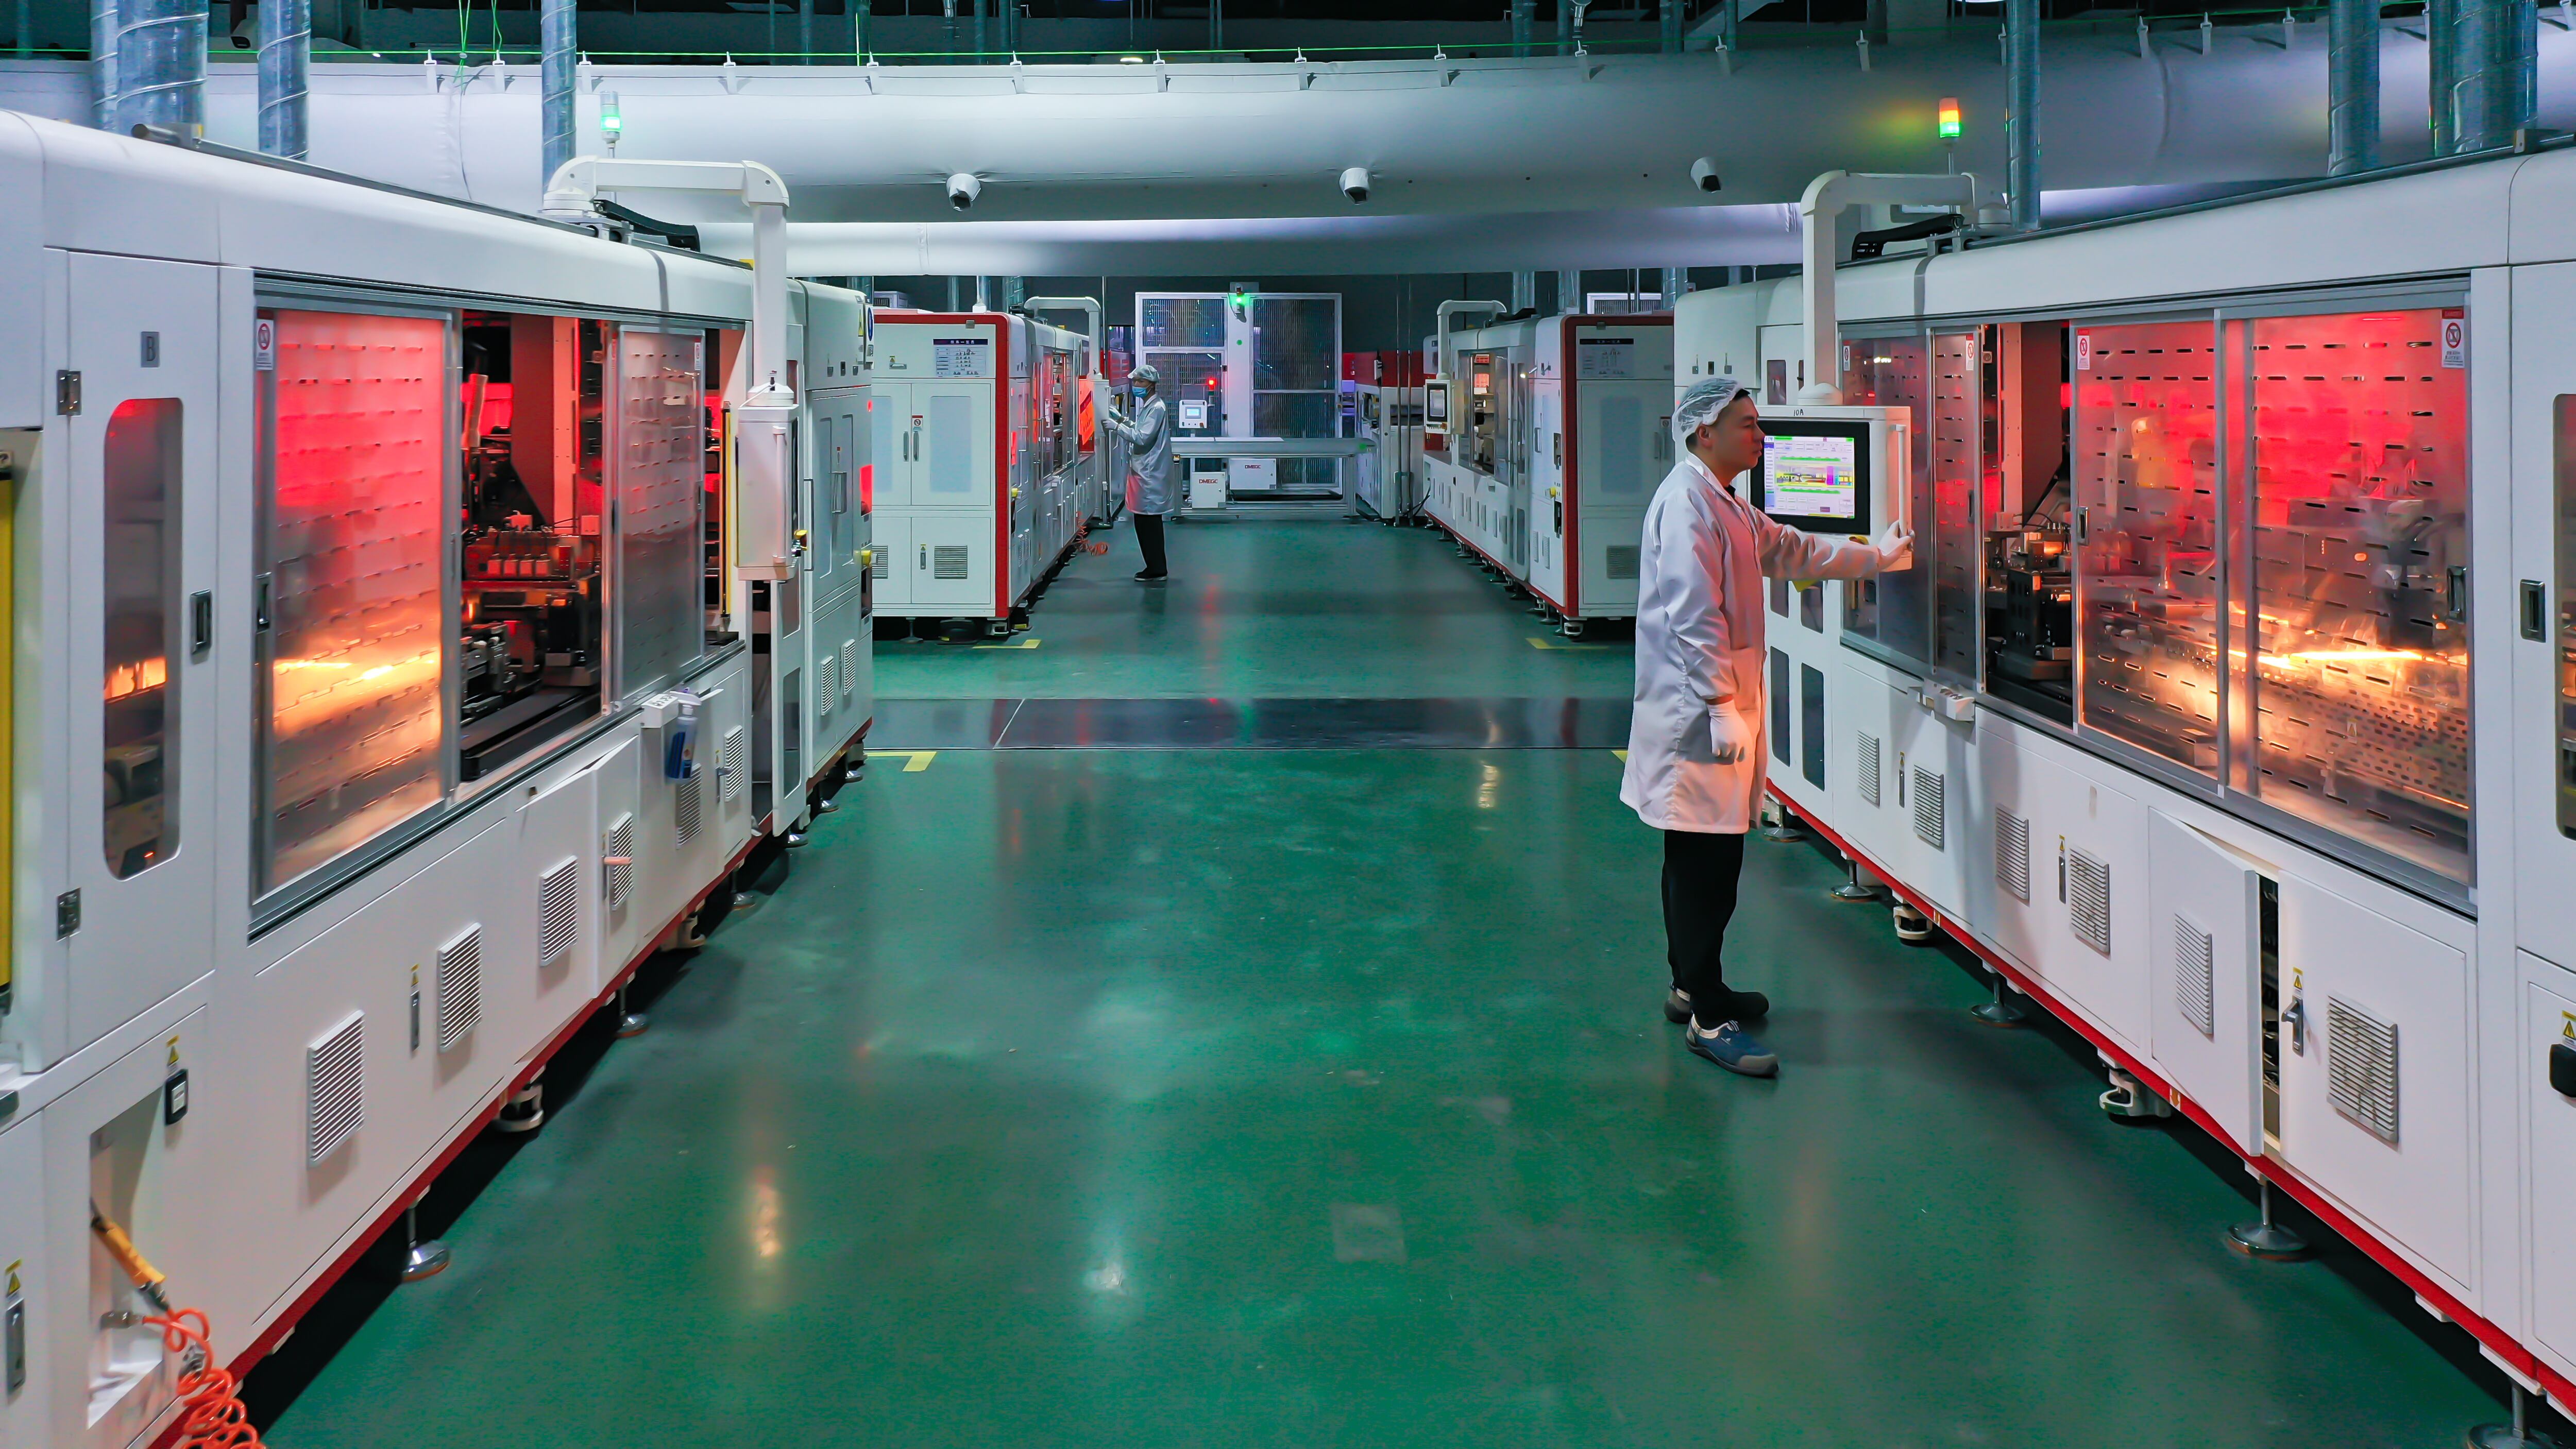 Sustituir el silicio como elemento básico de componentes electrónicos es uno de los grandes objetivos de la ciencia de materiales. Por ejemplo, en paneles solares como los que fabrica este laboratorio industrial en la provincia china de Jiangsu.